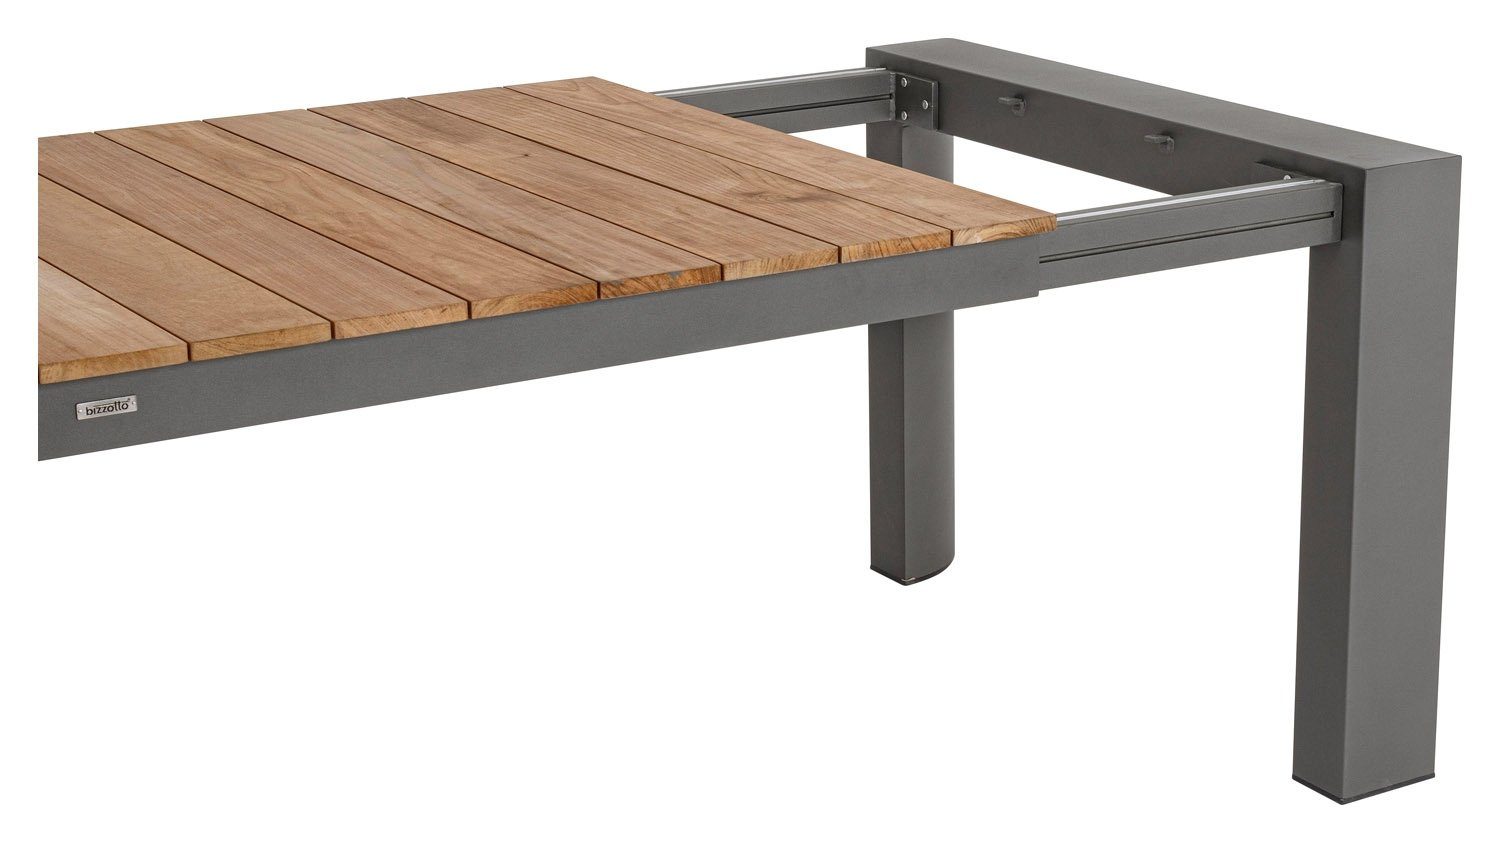 Tischplatte 294 cm, Braun, - Teakholz x Aluminium, Gartentisch aus Bizzotto Ausziehbar, 228 100 Anthrazit, CAMERON,